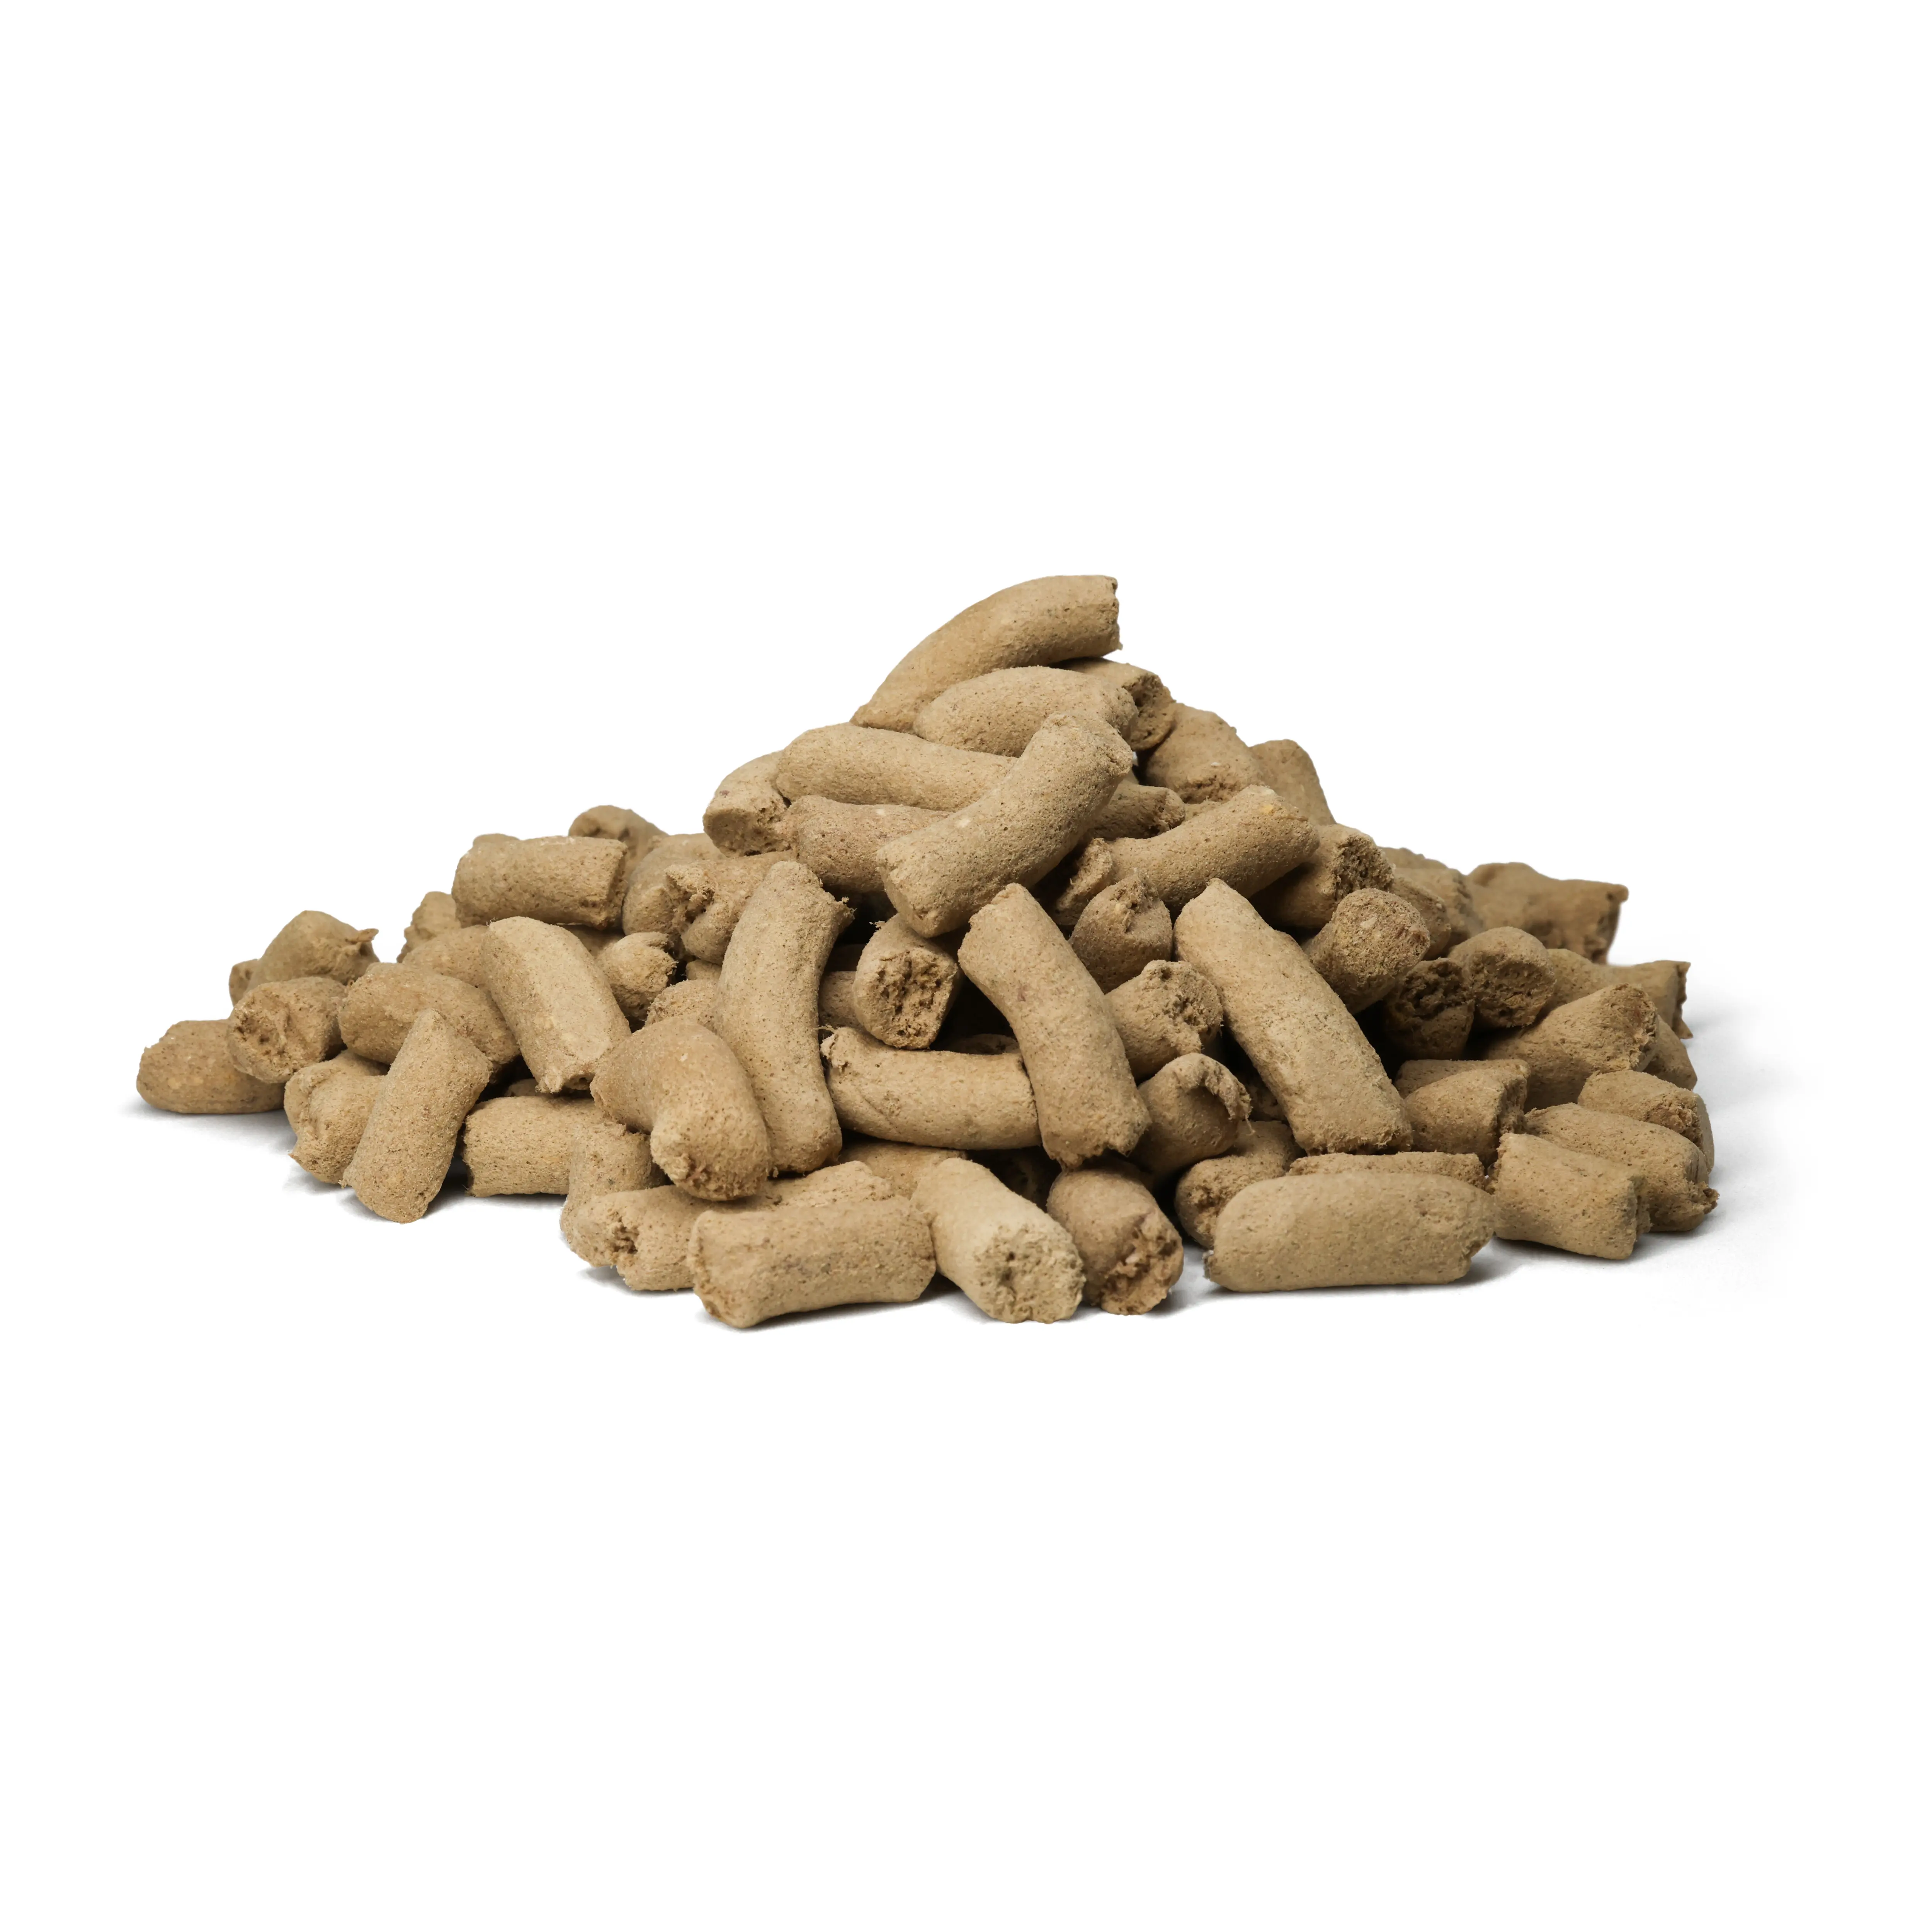 OEM ODM üreticisi sağlık komple sağlık evcil hayvan kuru gıda yüksek protein taze et malzemeler tahıl ücretsiz köpek maması İngiltere